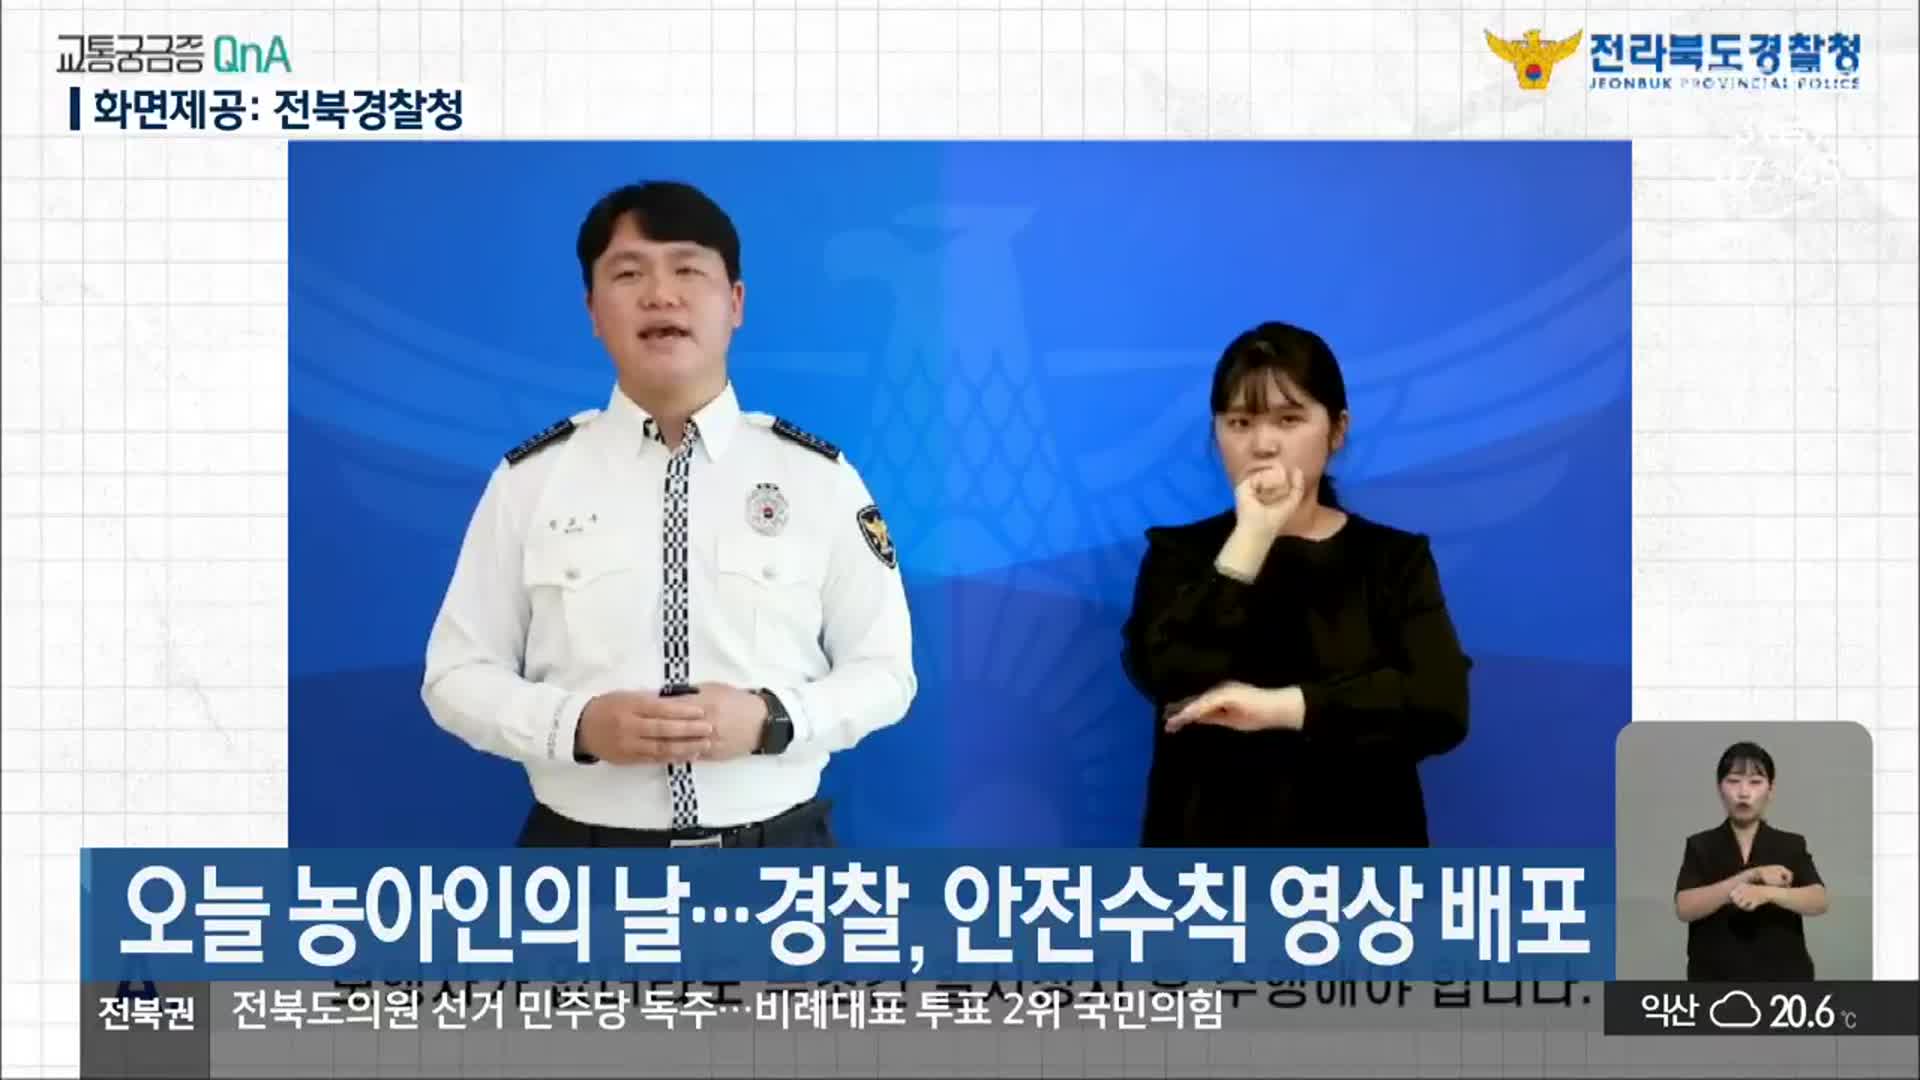 오늘 농아인의 날…경찰, 안전수칙 영상 배포